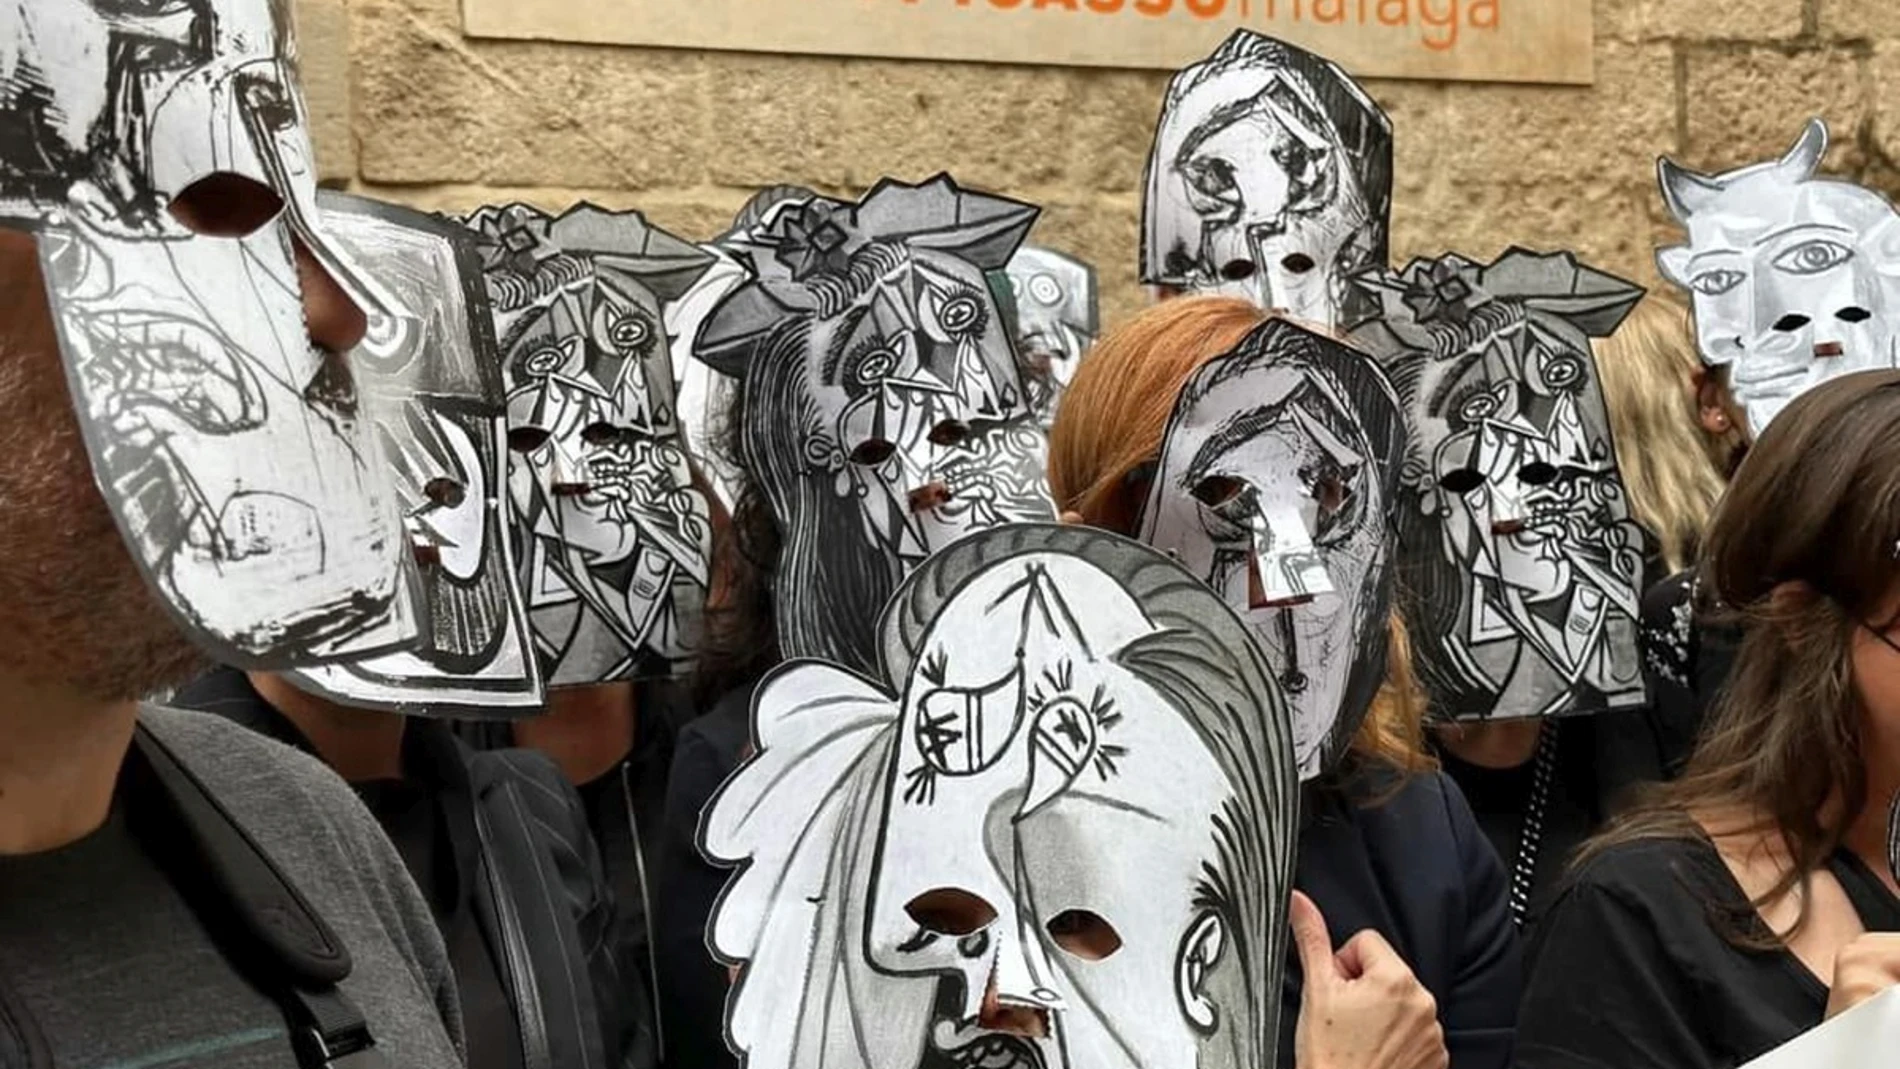 Una de las protestas que llevó a cabo el comité de empresa del Museo Picasso Málaga